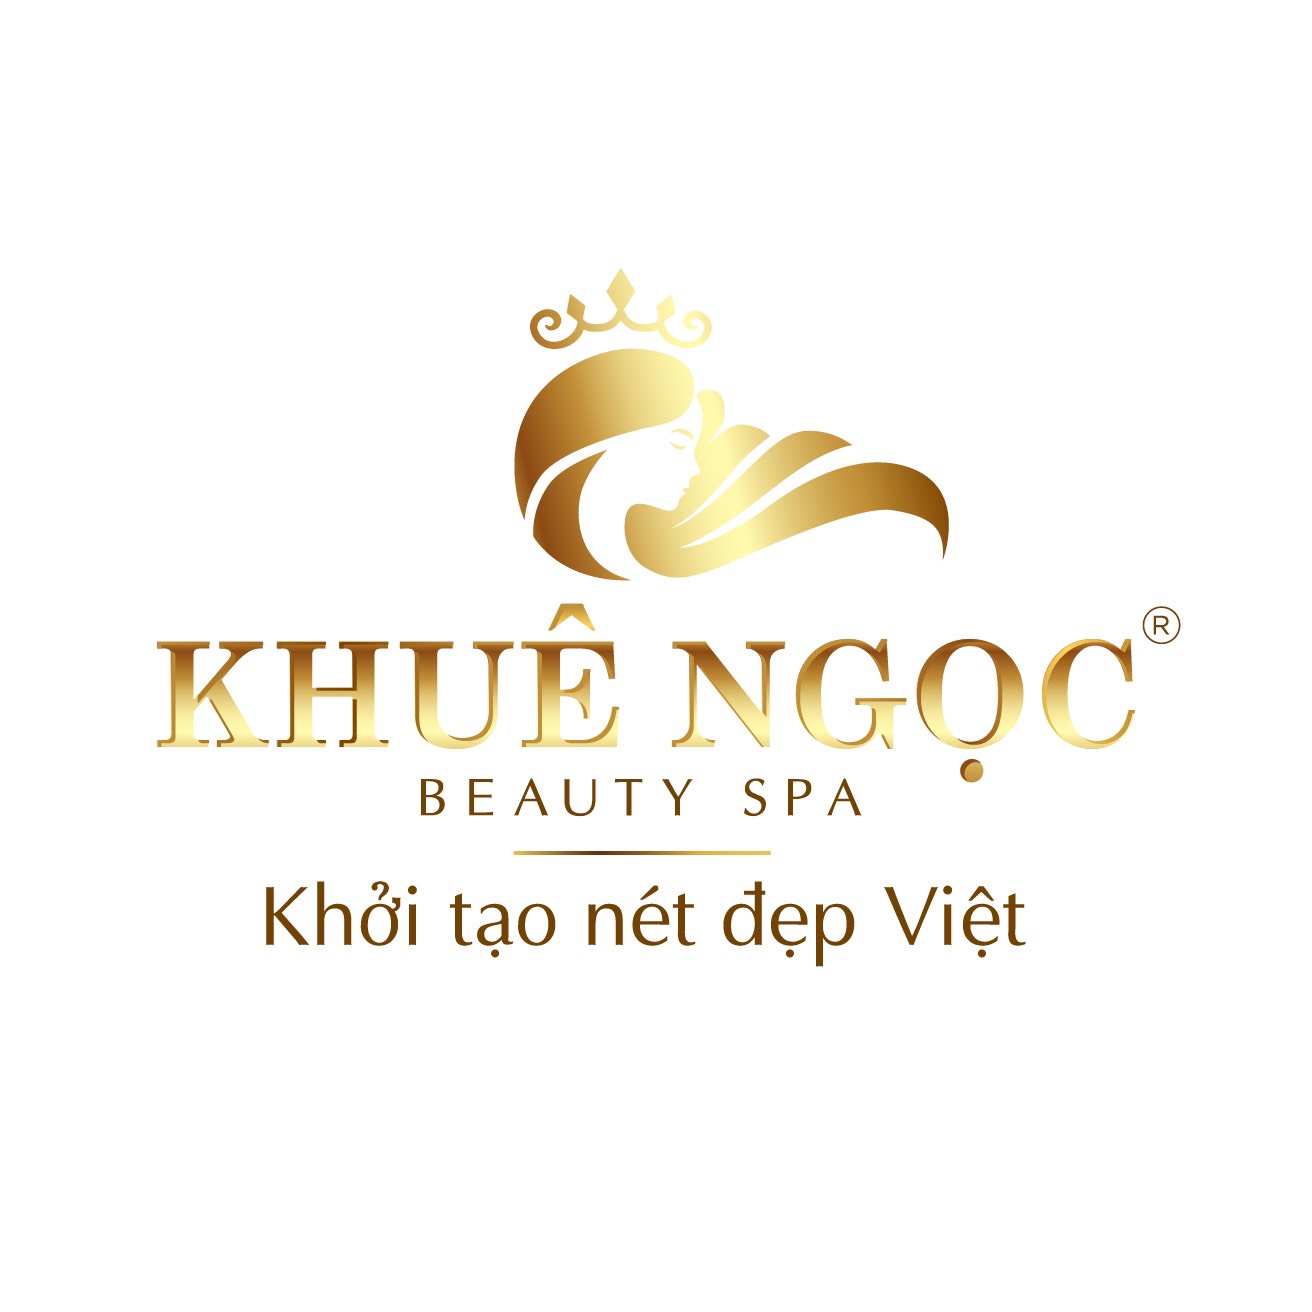 Ceo Hoàng Thảo Nguyên chính thức kinh doanh thương hiệu mới Khuê Ngọc Beauty Spa - 2